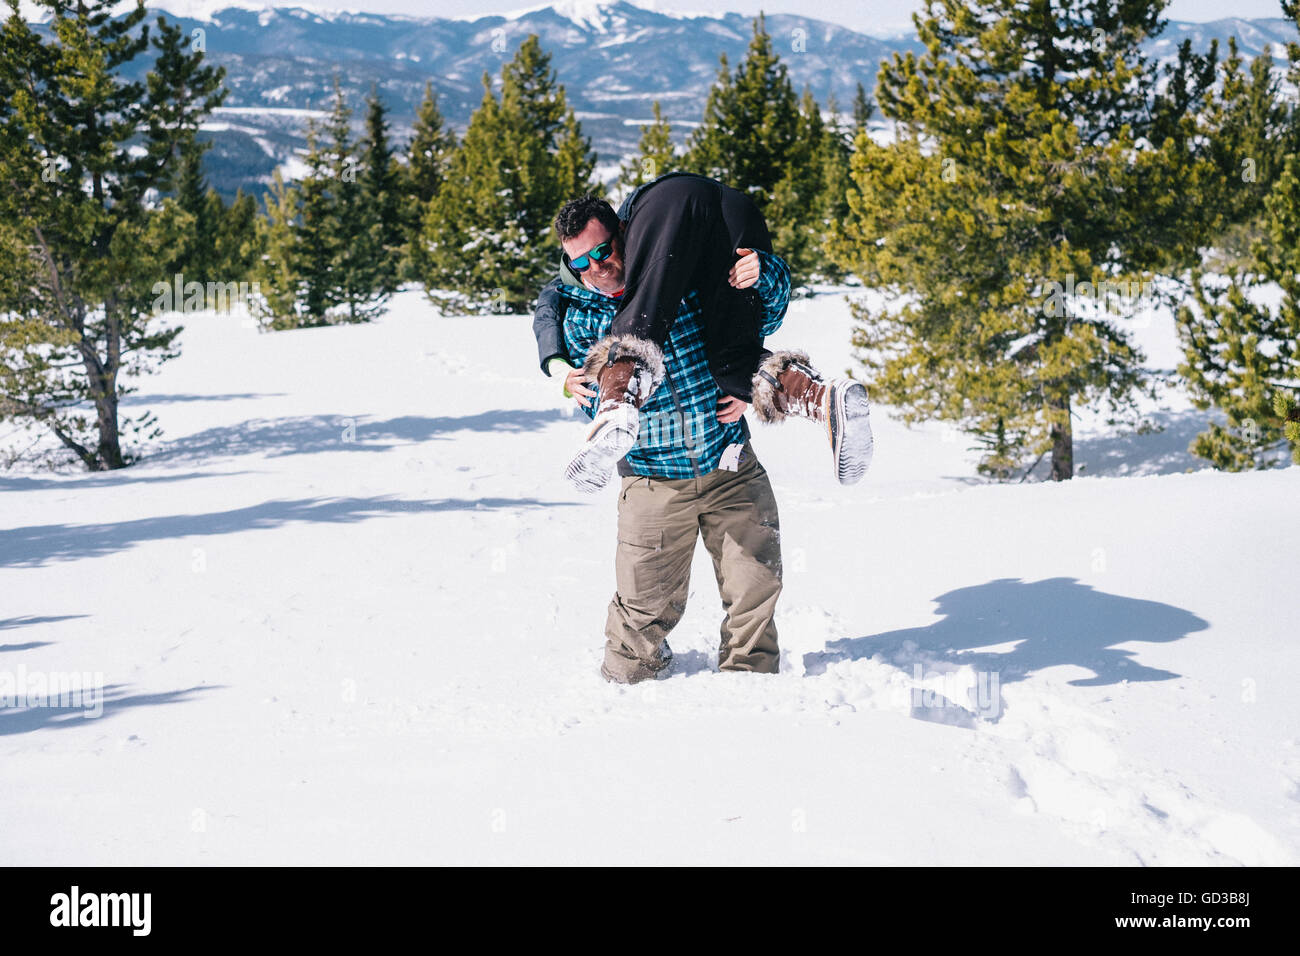 Un uomo nella neve profonda che porta una persona sulle sue spalle in un vigile del fuoco di sollevamento del. Foto Stock